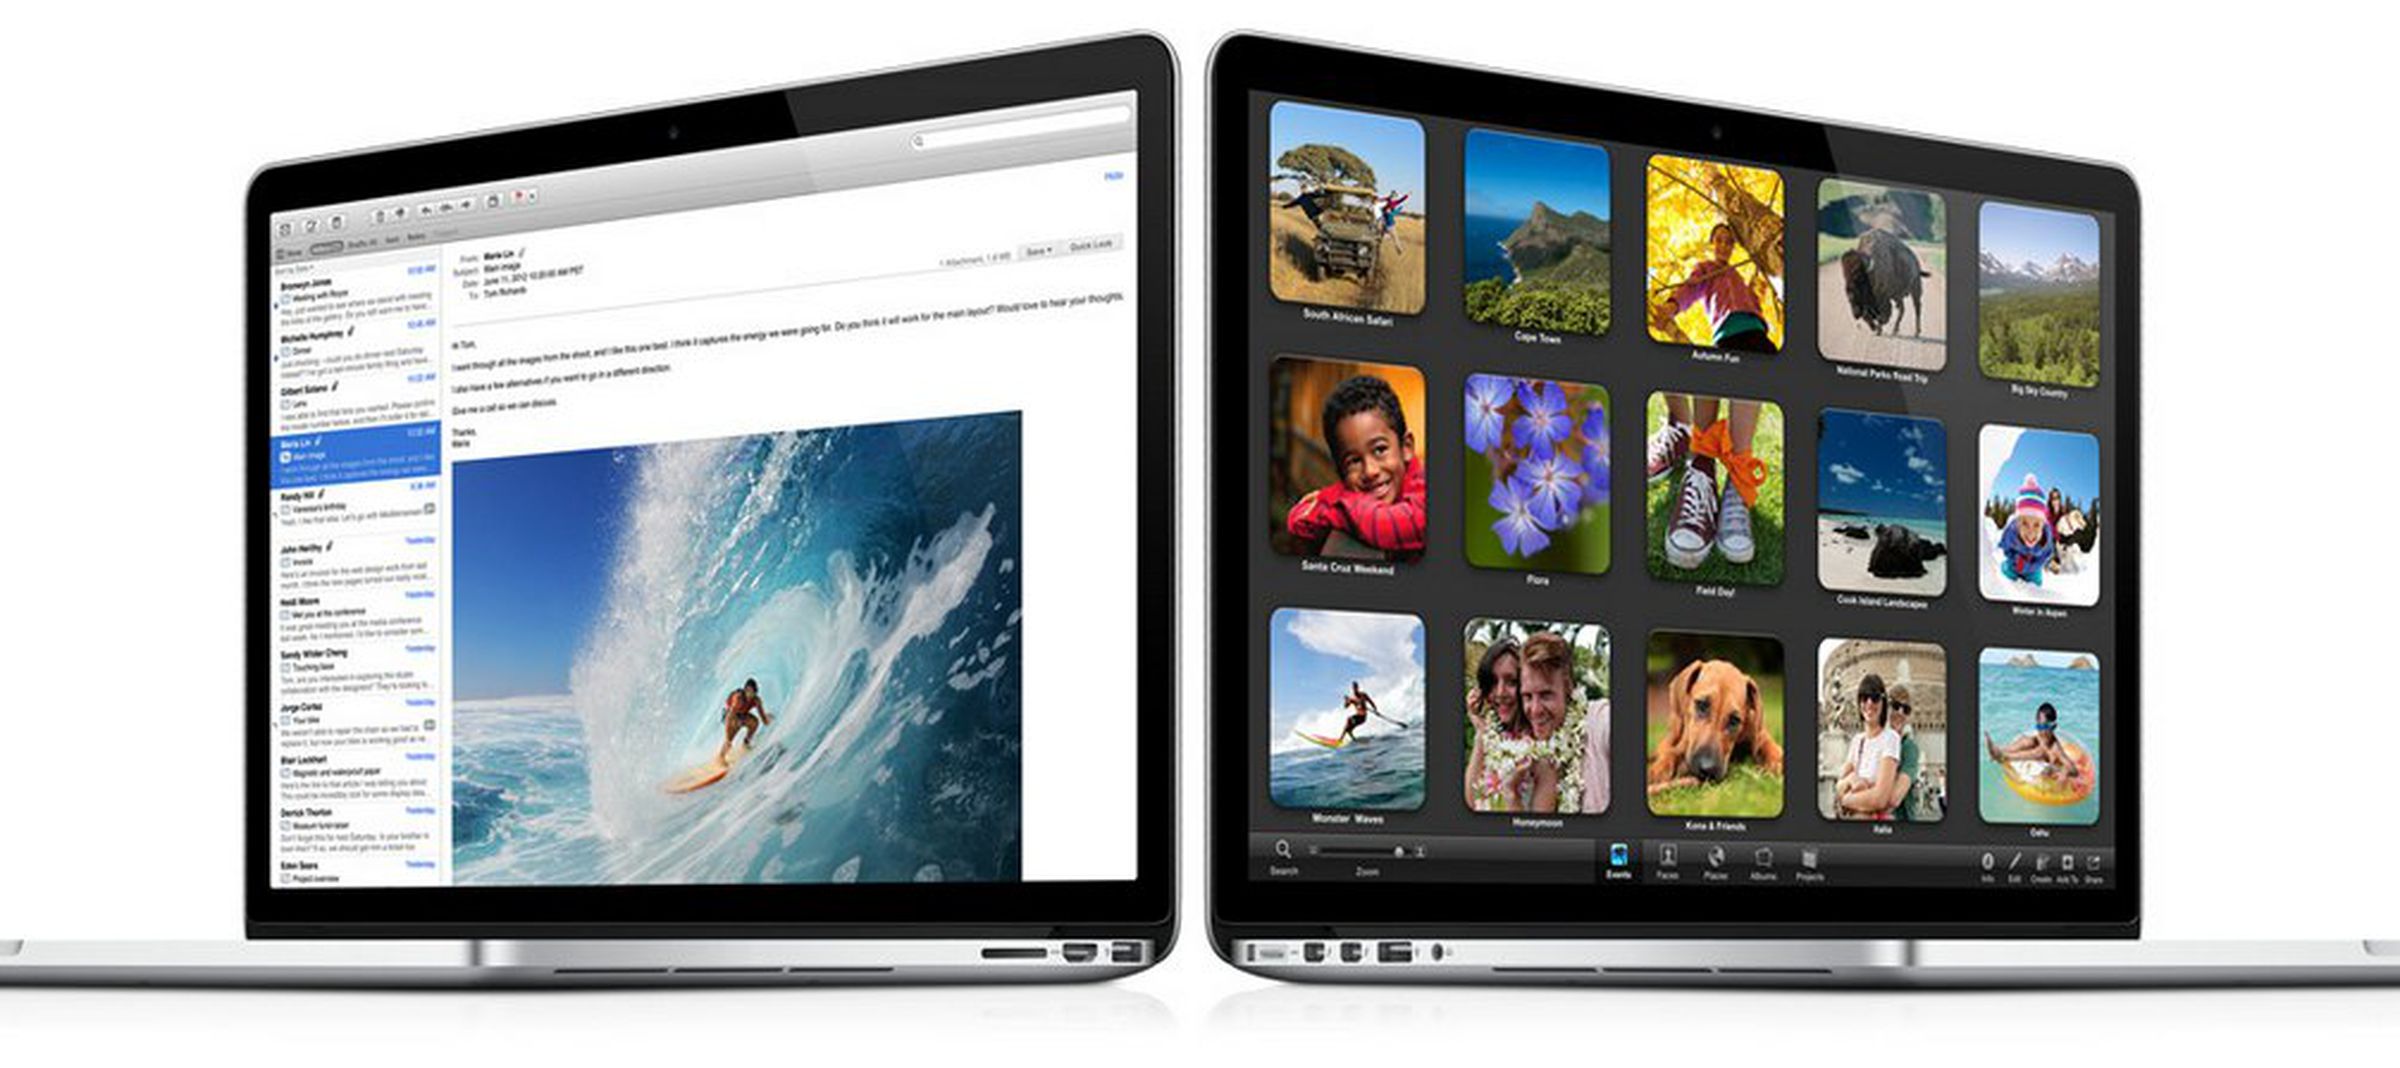 MacBook Pro with Retina display press photos